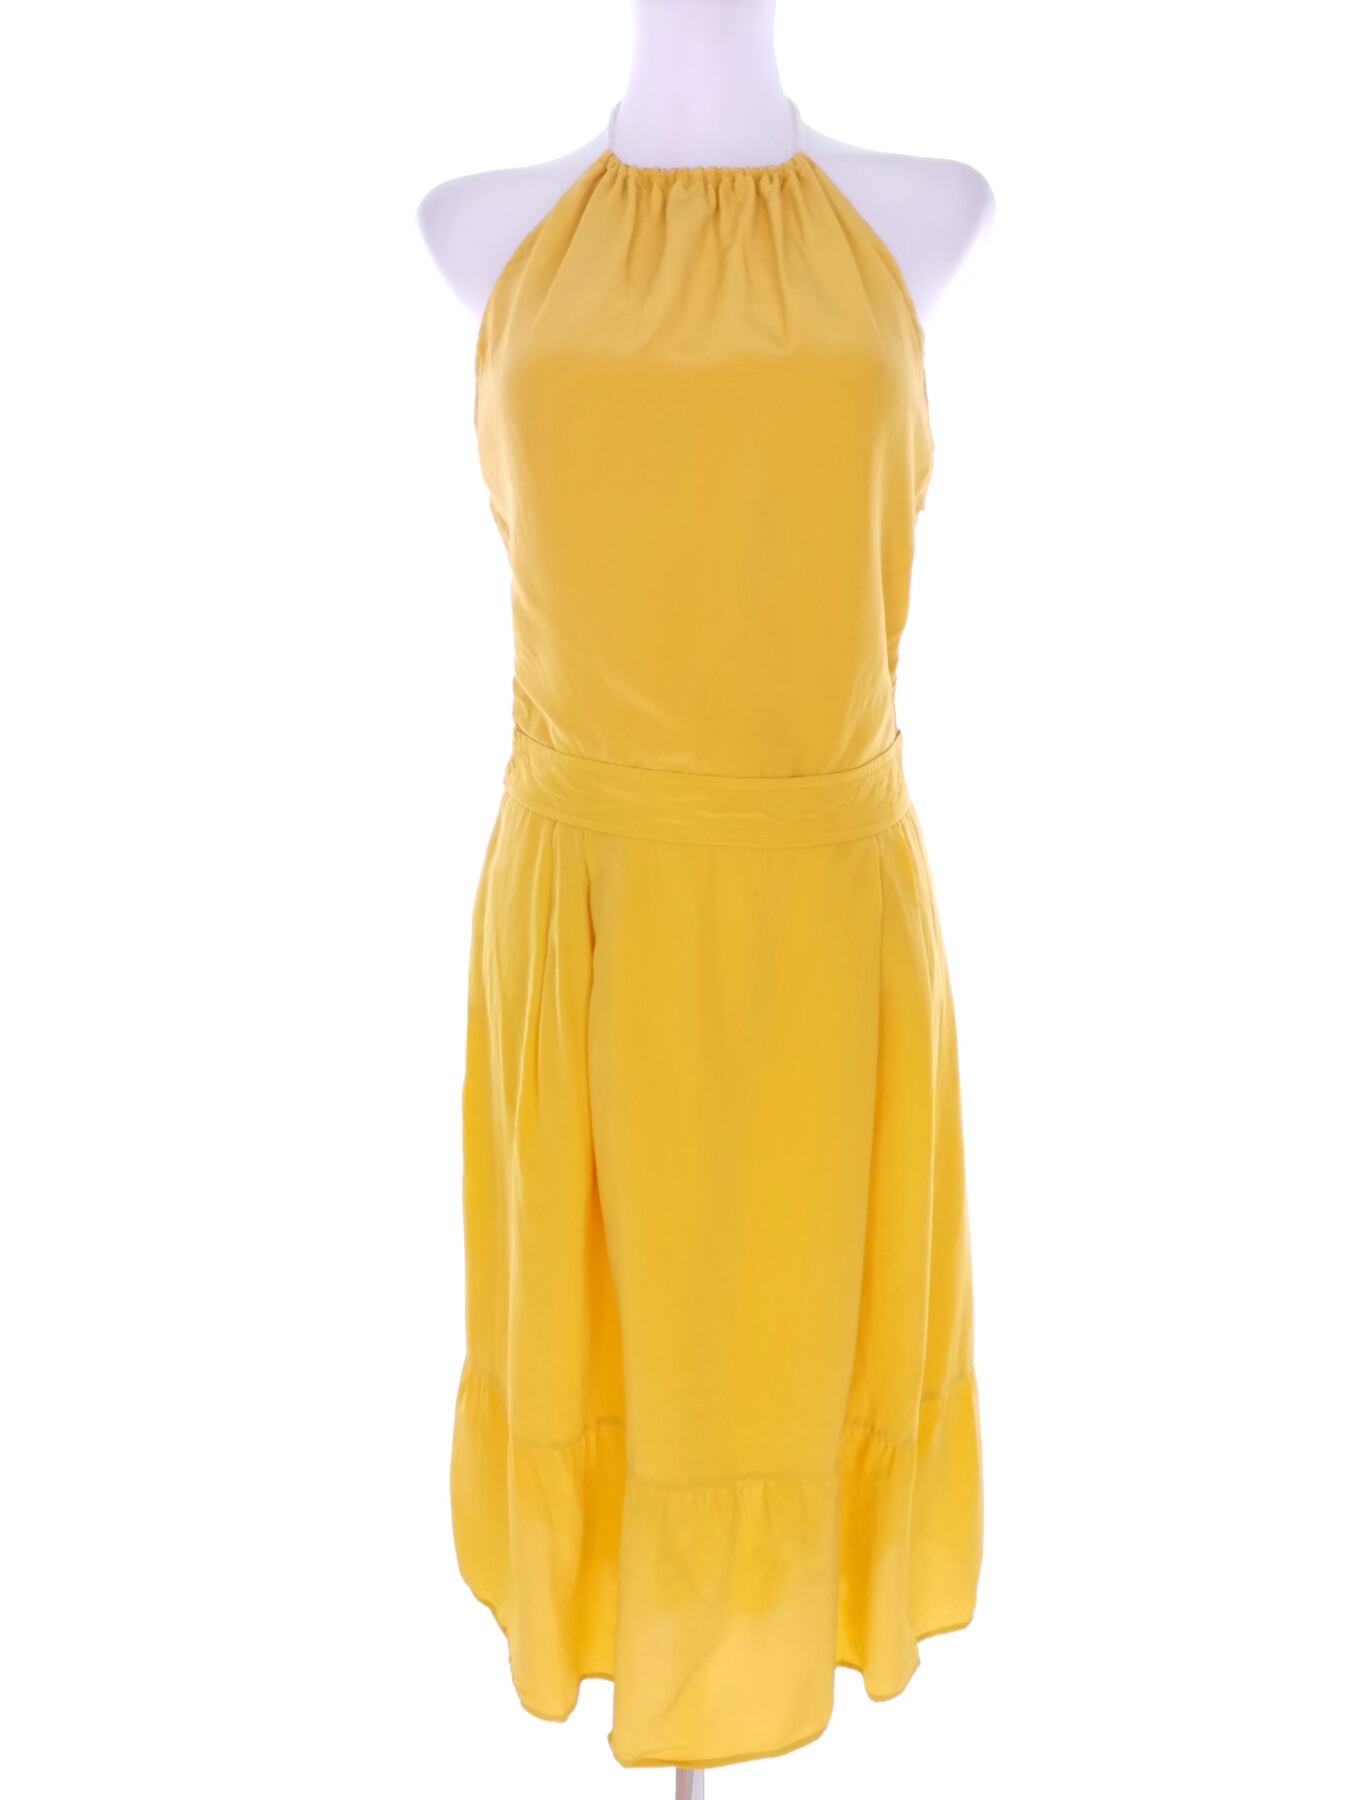 Massimo dutti Rozmiar 36 Kolor Żółty Halter Suknia Balowa Sukienka Wieczorowa Bezrękawnik Midi Materiał Jedwab 100%